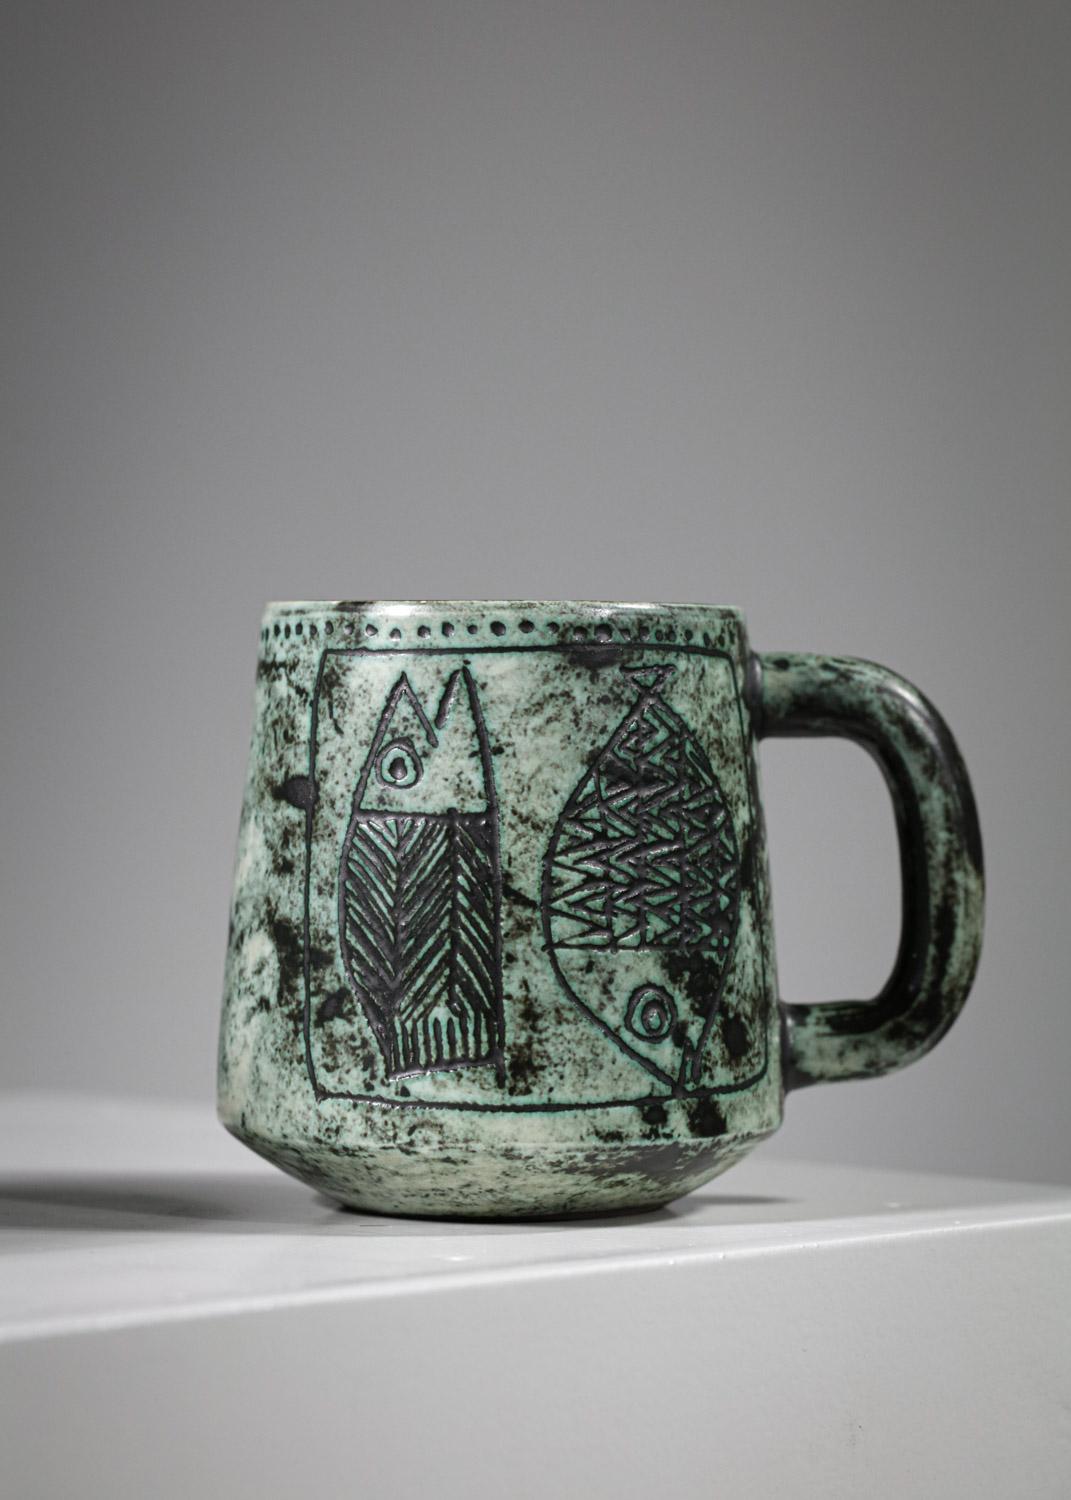 Duo de mugs en céramique de l'artiste français Jacques Blin des années 60. Émaillage dans les tons verts avec des dessins sur chacune des tasses représentant des animaux stylisés aux formes géométriques typiques de l'œuvre de l'artiste. Très bel